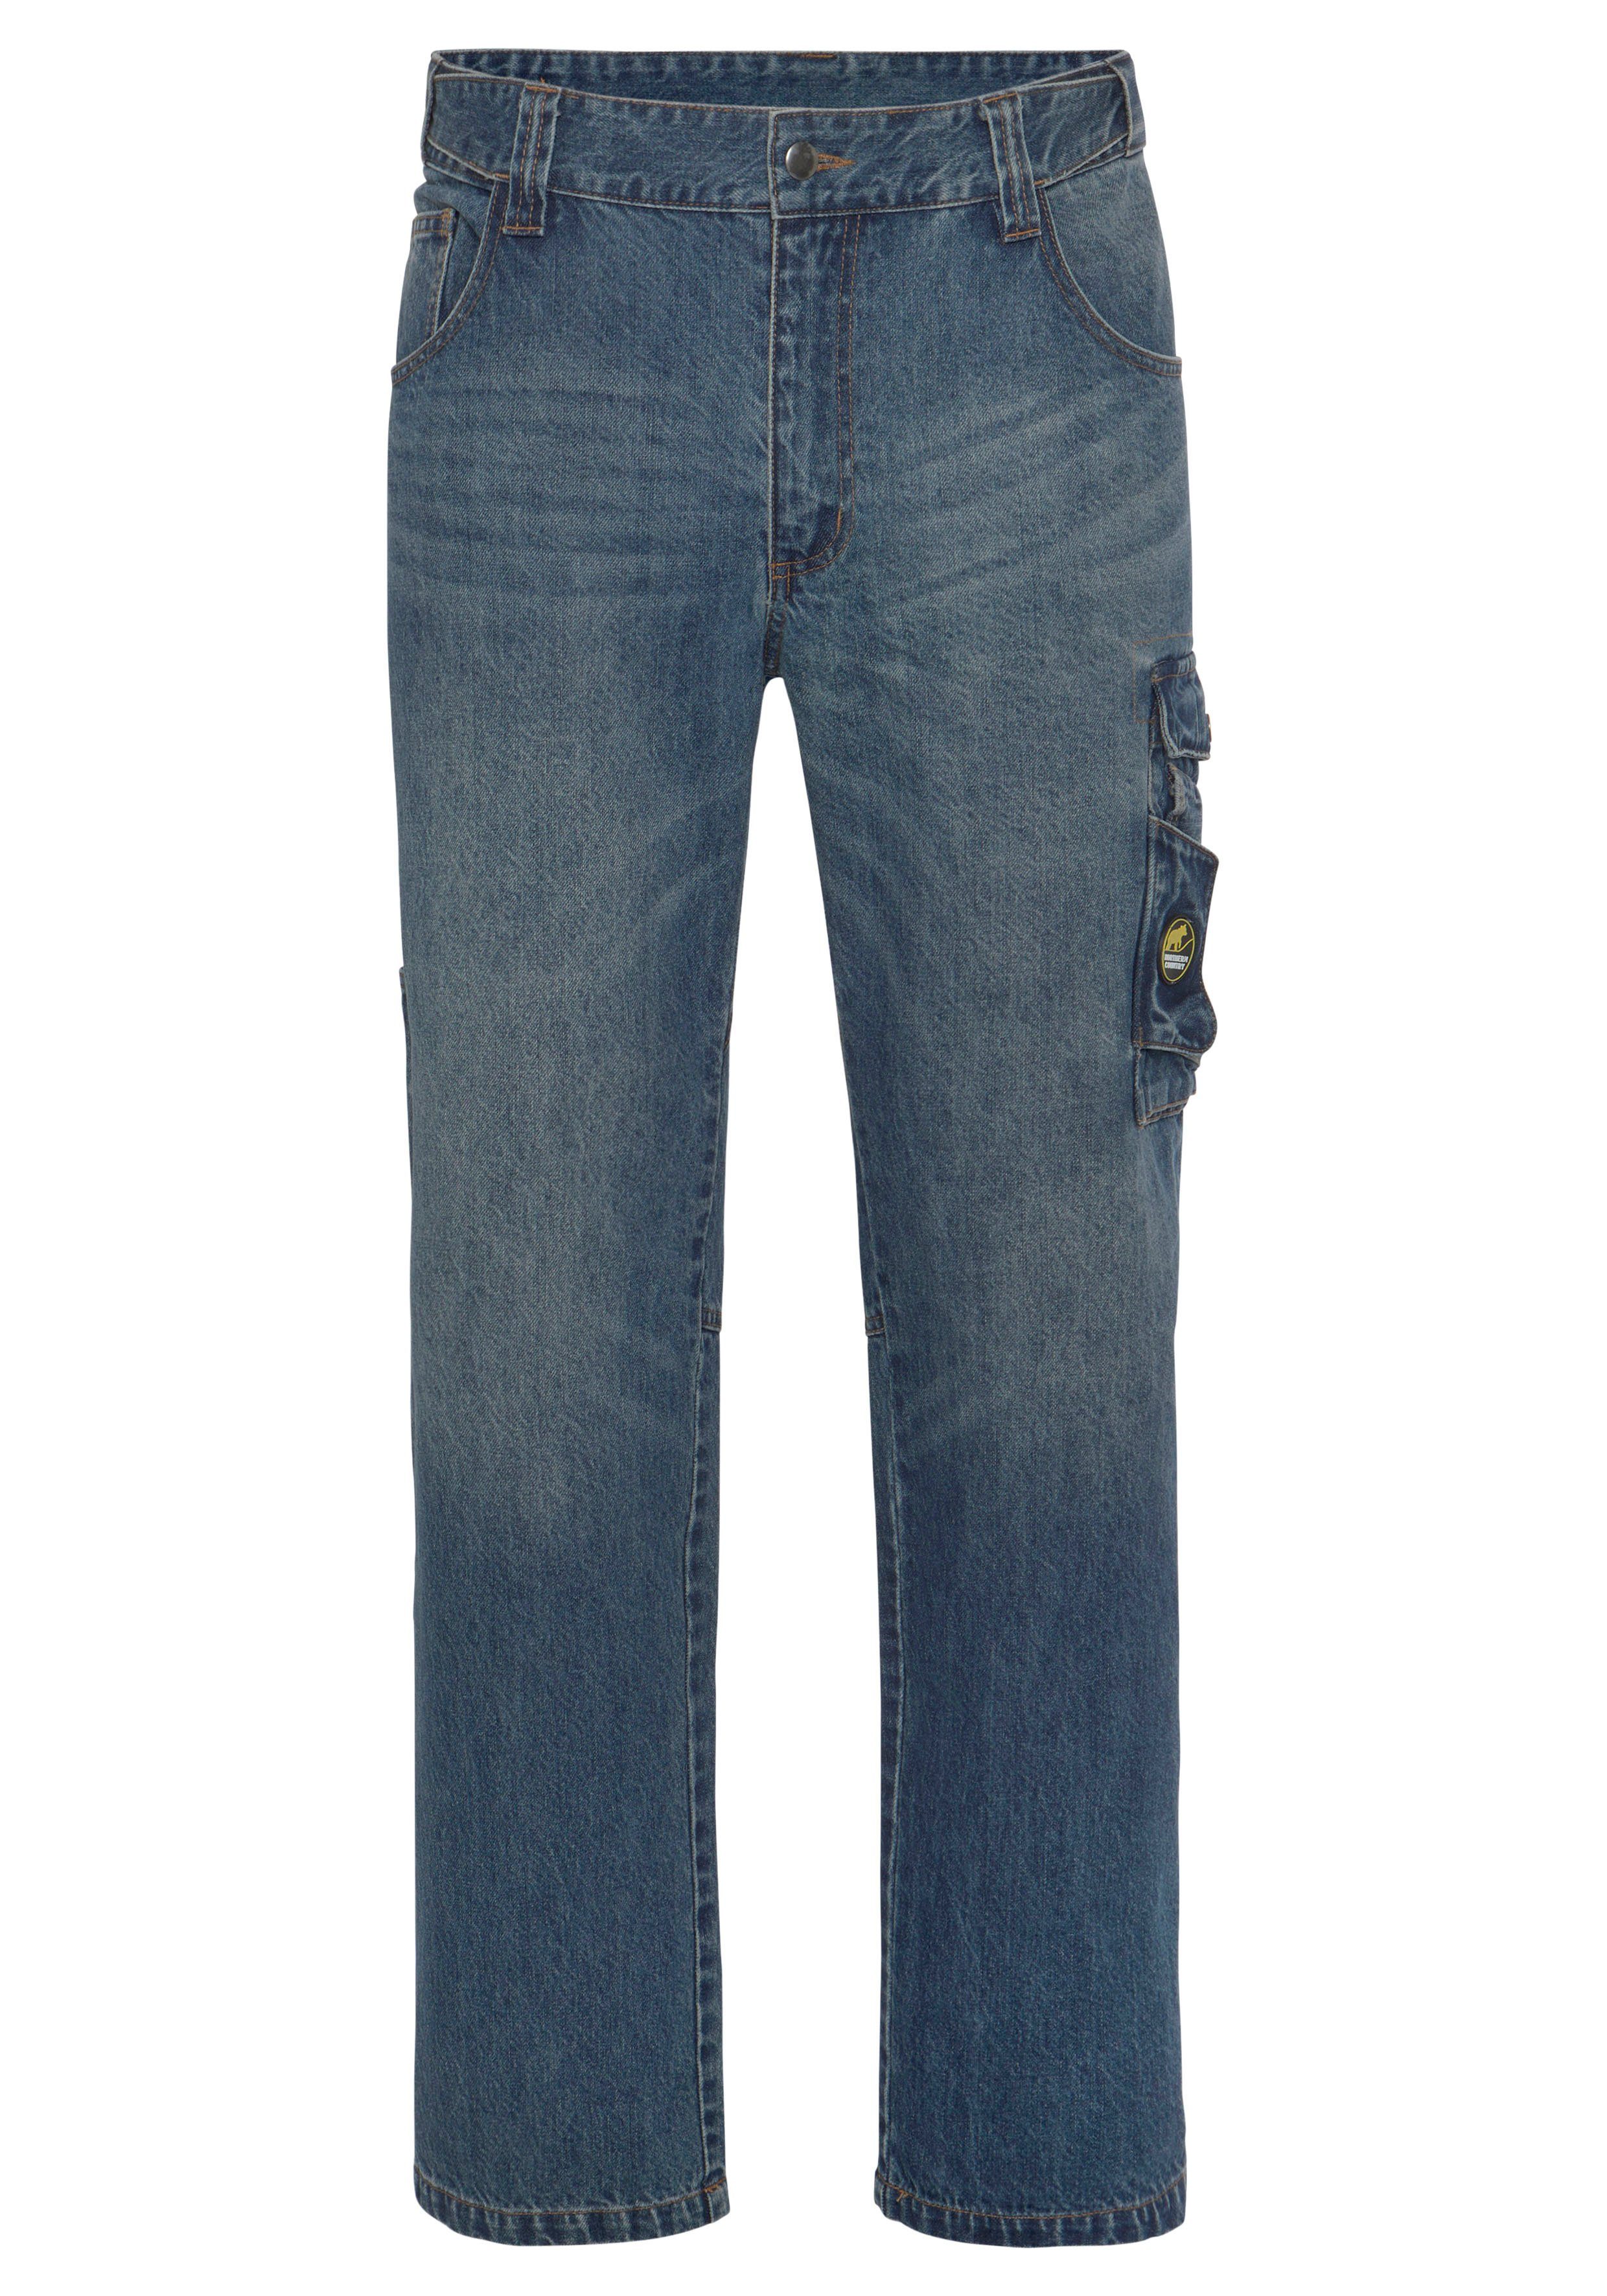 Northern Country Arbeitshose Multipocket Jeans (aus 100% Baumwolle, robuster Jeansstoff, comfort fit) mit dehnbarem Bund, mit 9 praktischen Taschen | Baumwollhosen